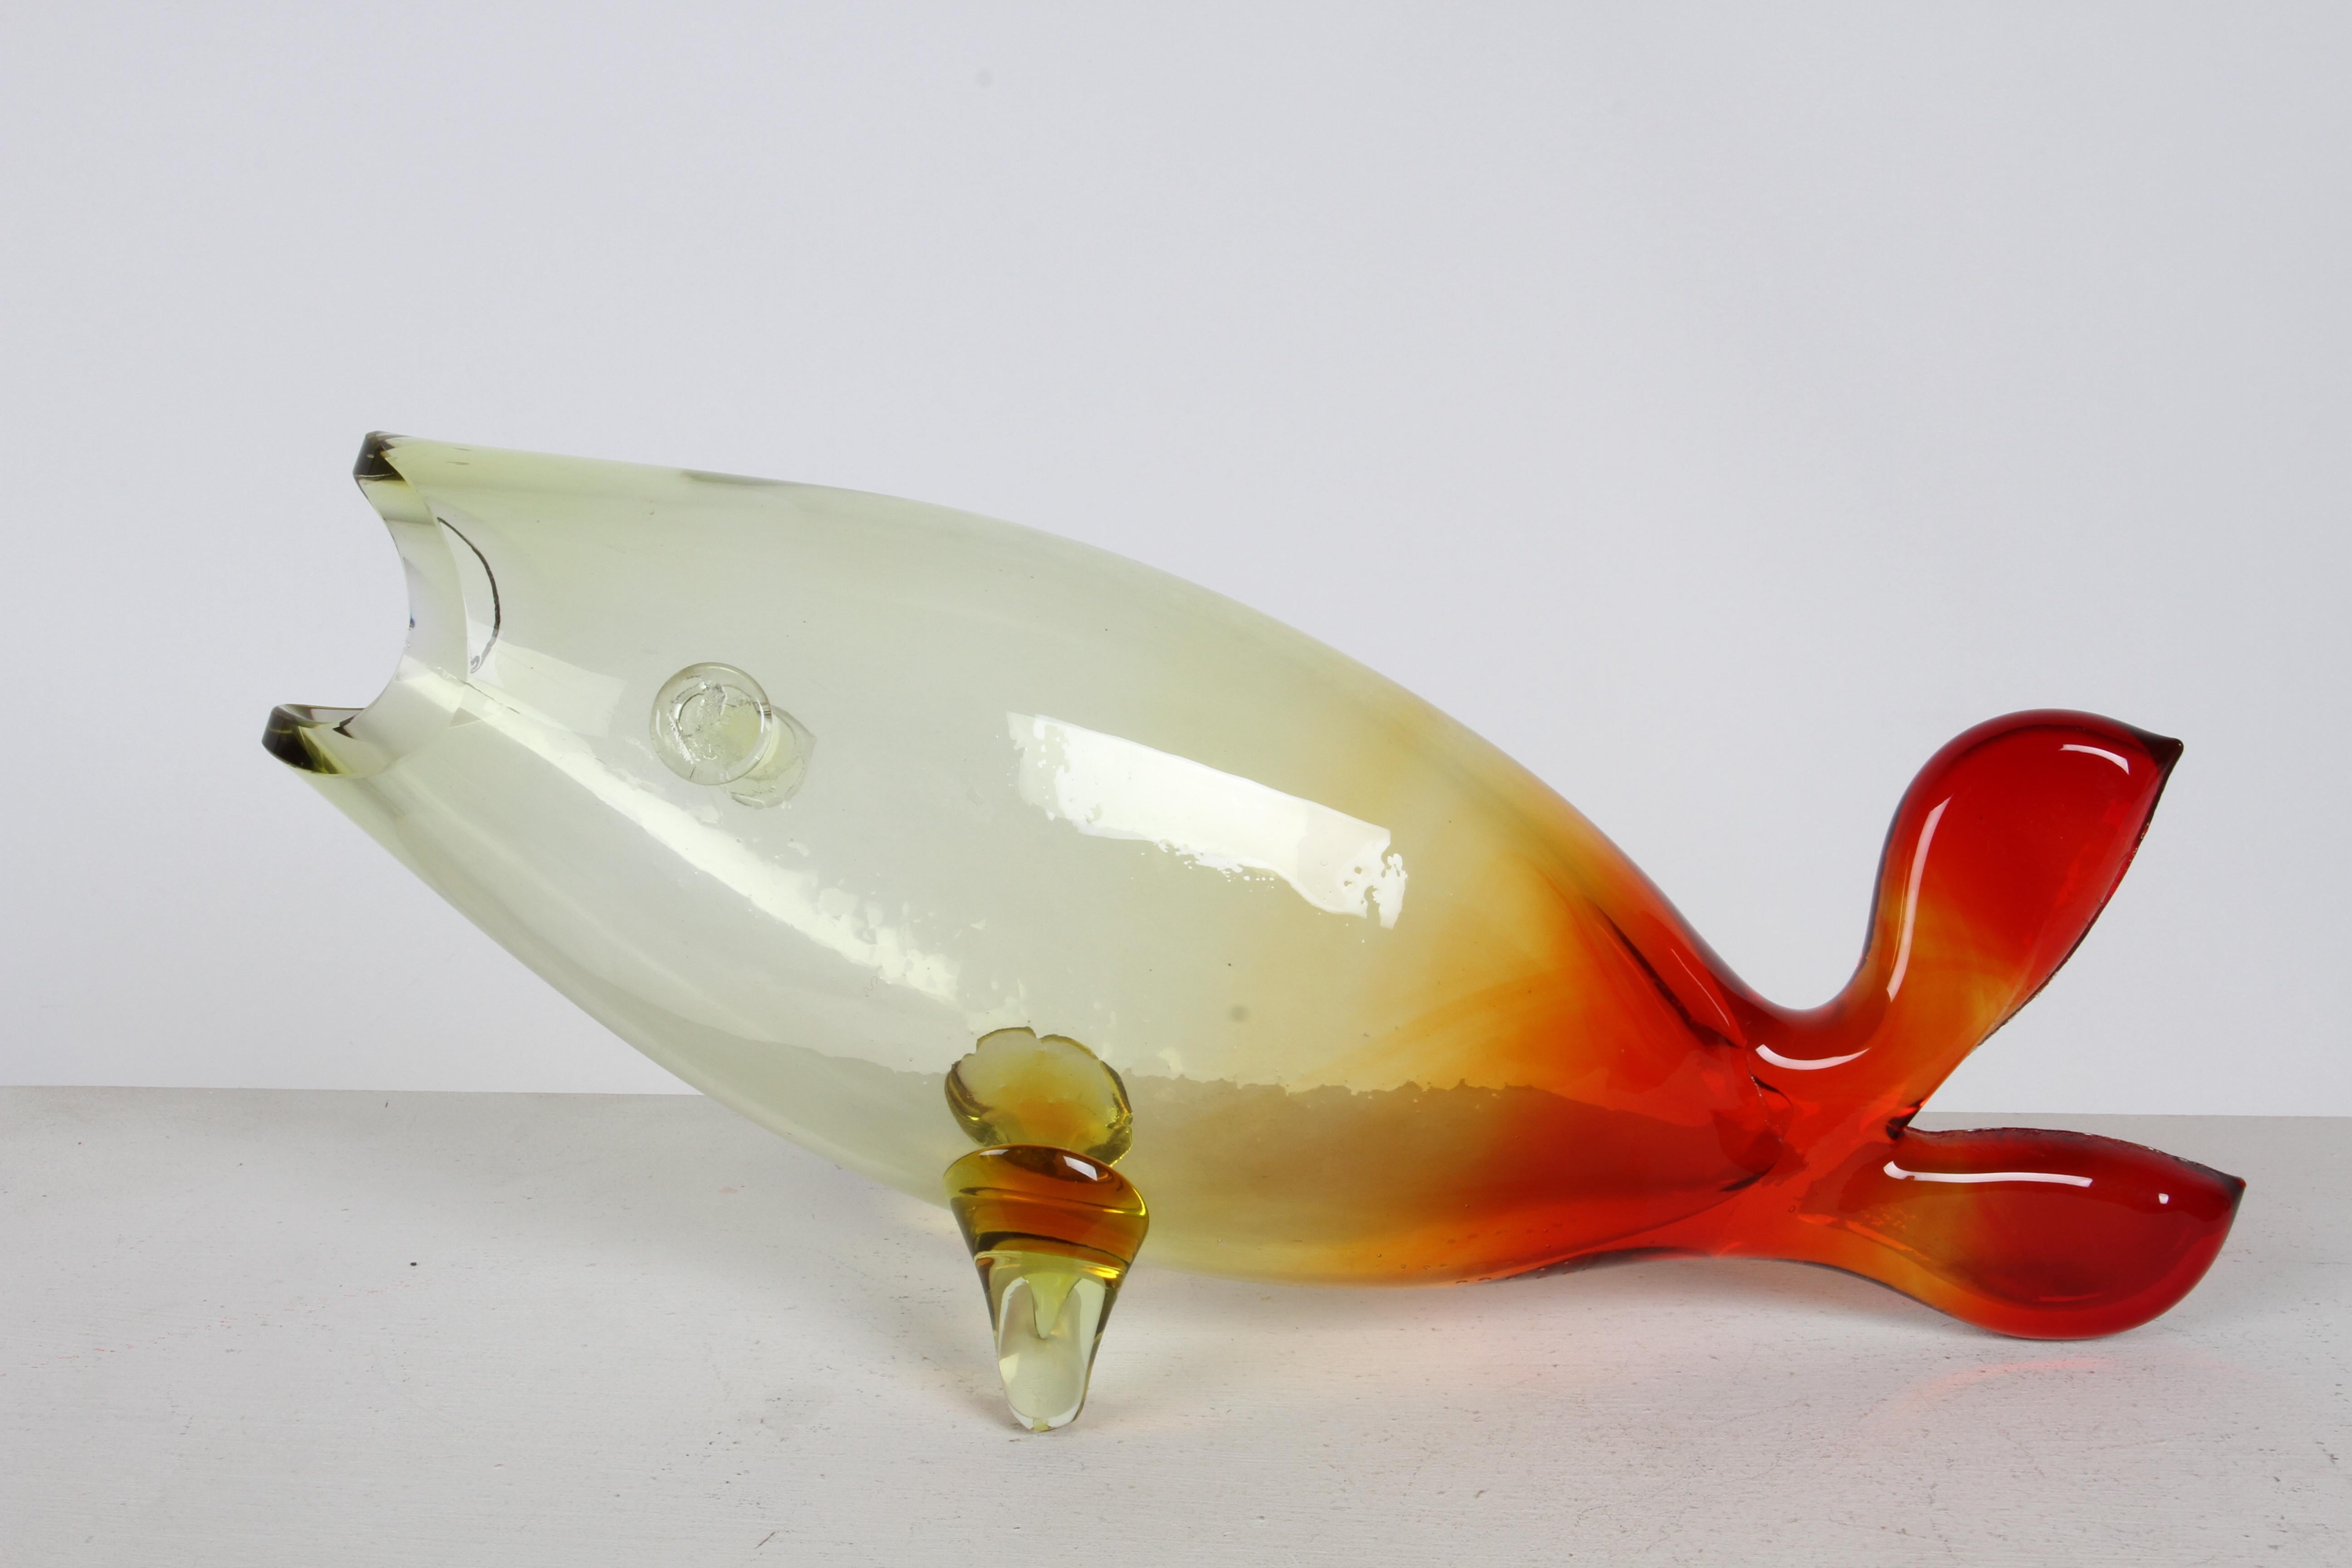 Jarrón escultórico Blenko vintage de mediados de siglo diseñado por Winslow Anderson, de cristal soplado a mano que pasa del amarillo al rojo. Modelo Blenko nº 971, en buen estado, un pequeño arañazo interior como se ve en la foto. 